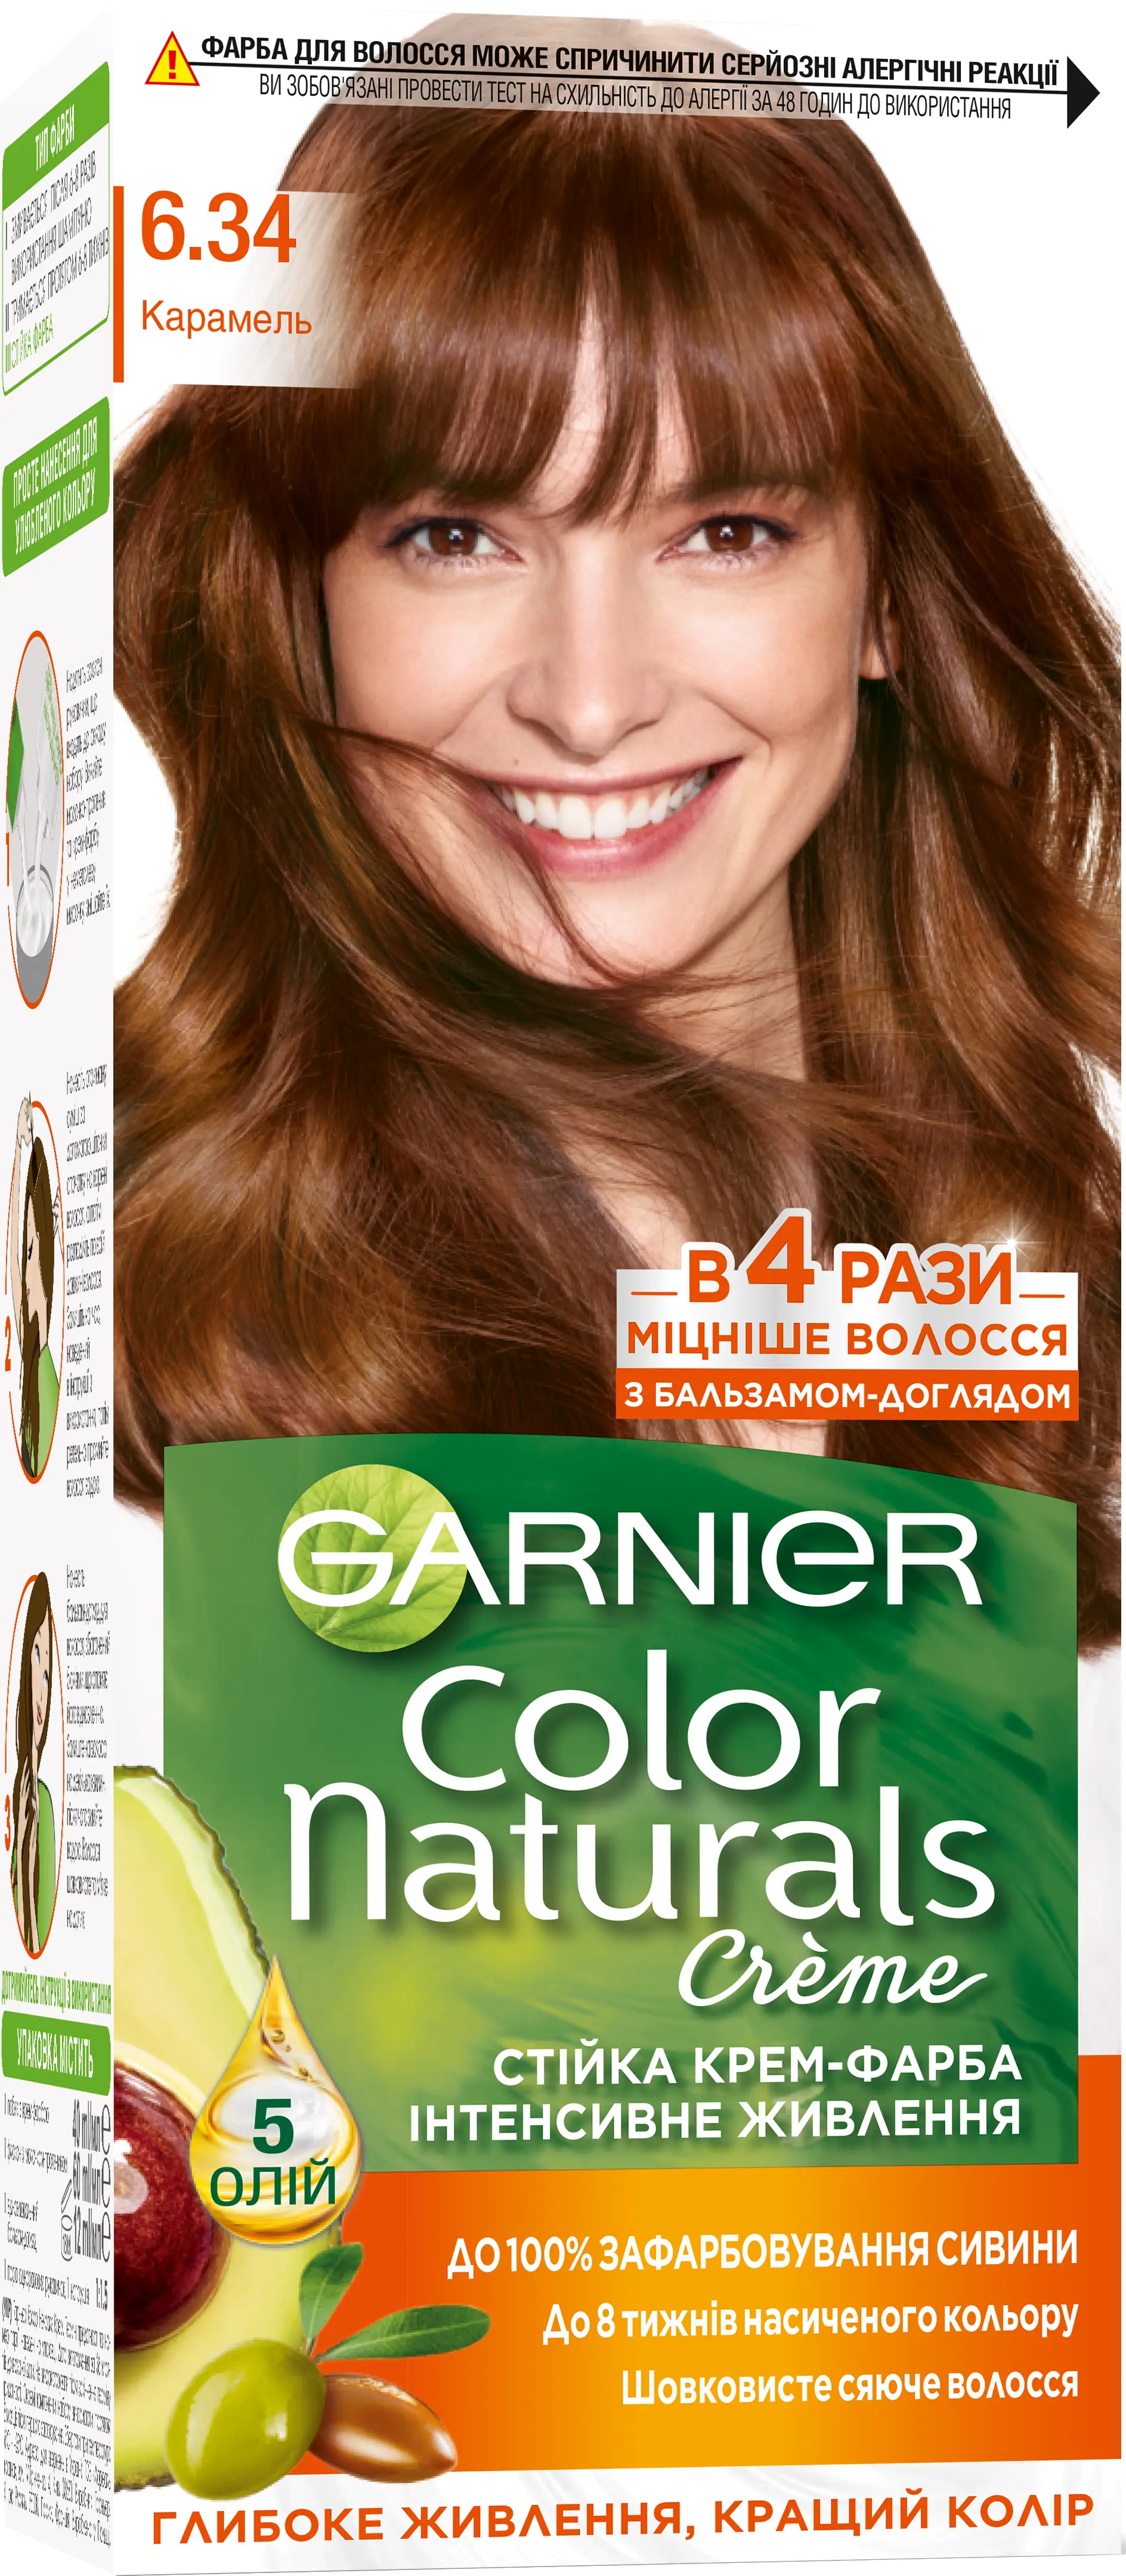 Отзывы краска garnier color. Garnier Color naturals краска для волос, 6.34 карамель 110мл. Краска для волос гарньер колор карамель 6.34. Краска гарньер 6.34. Краска для волос Garnier Color naturals 6.34 карамель.